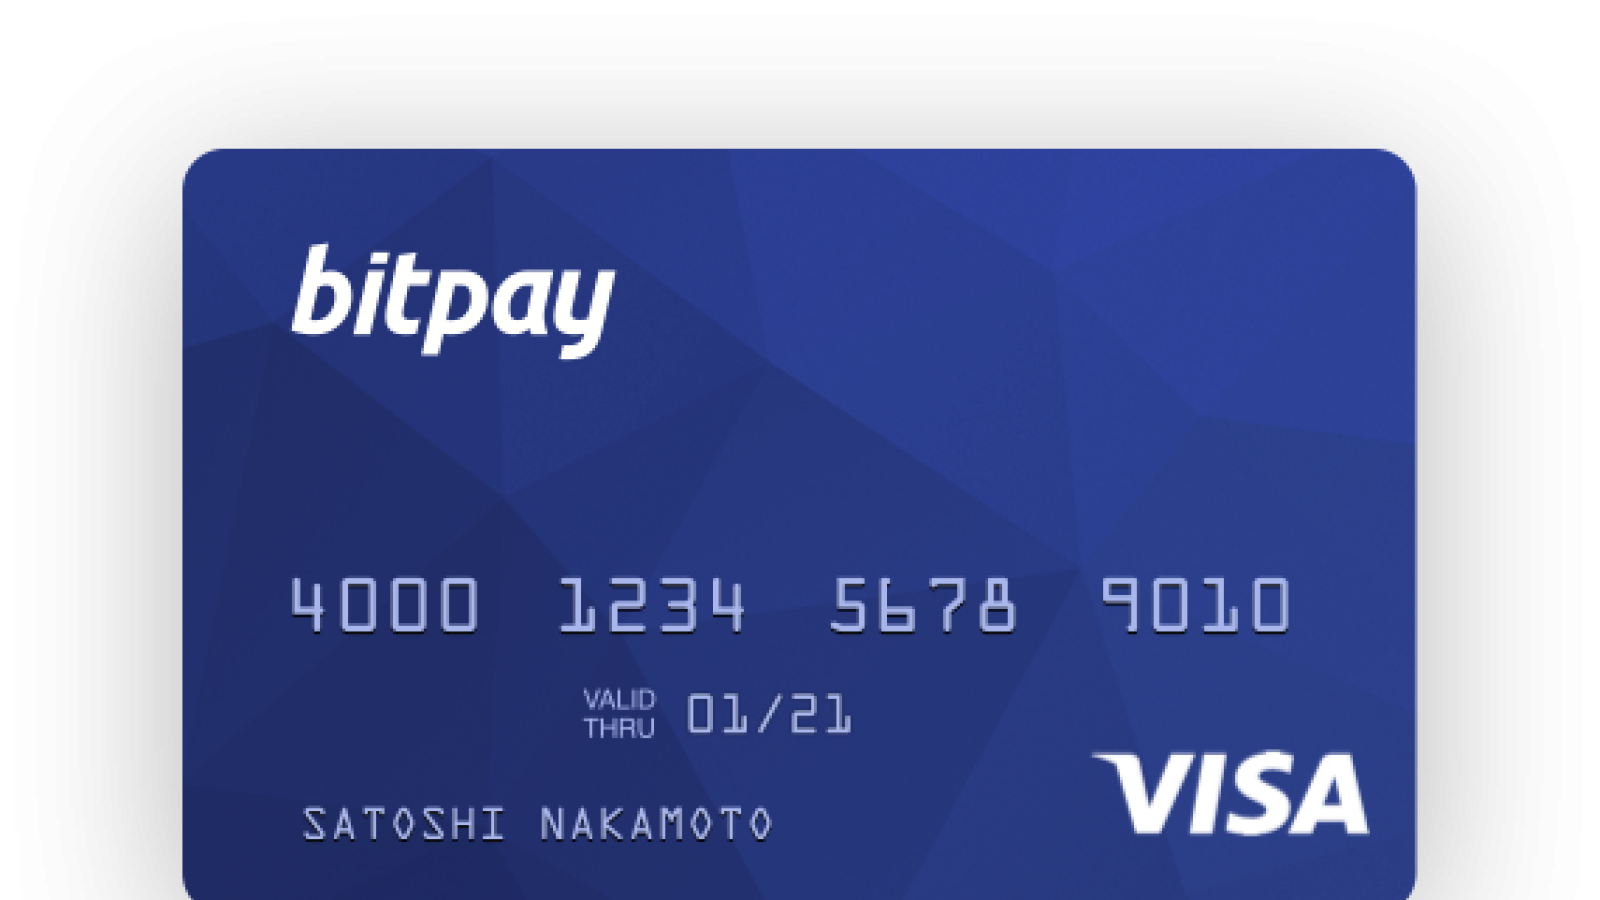 bitcoin debit card 2019